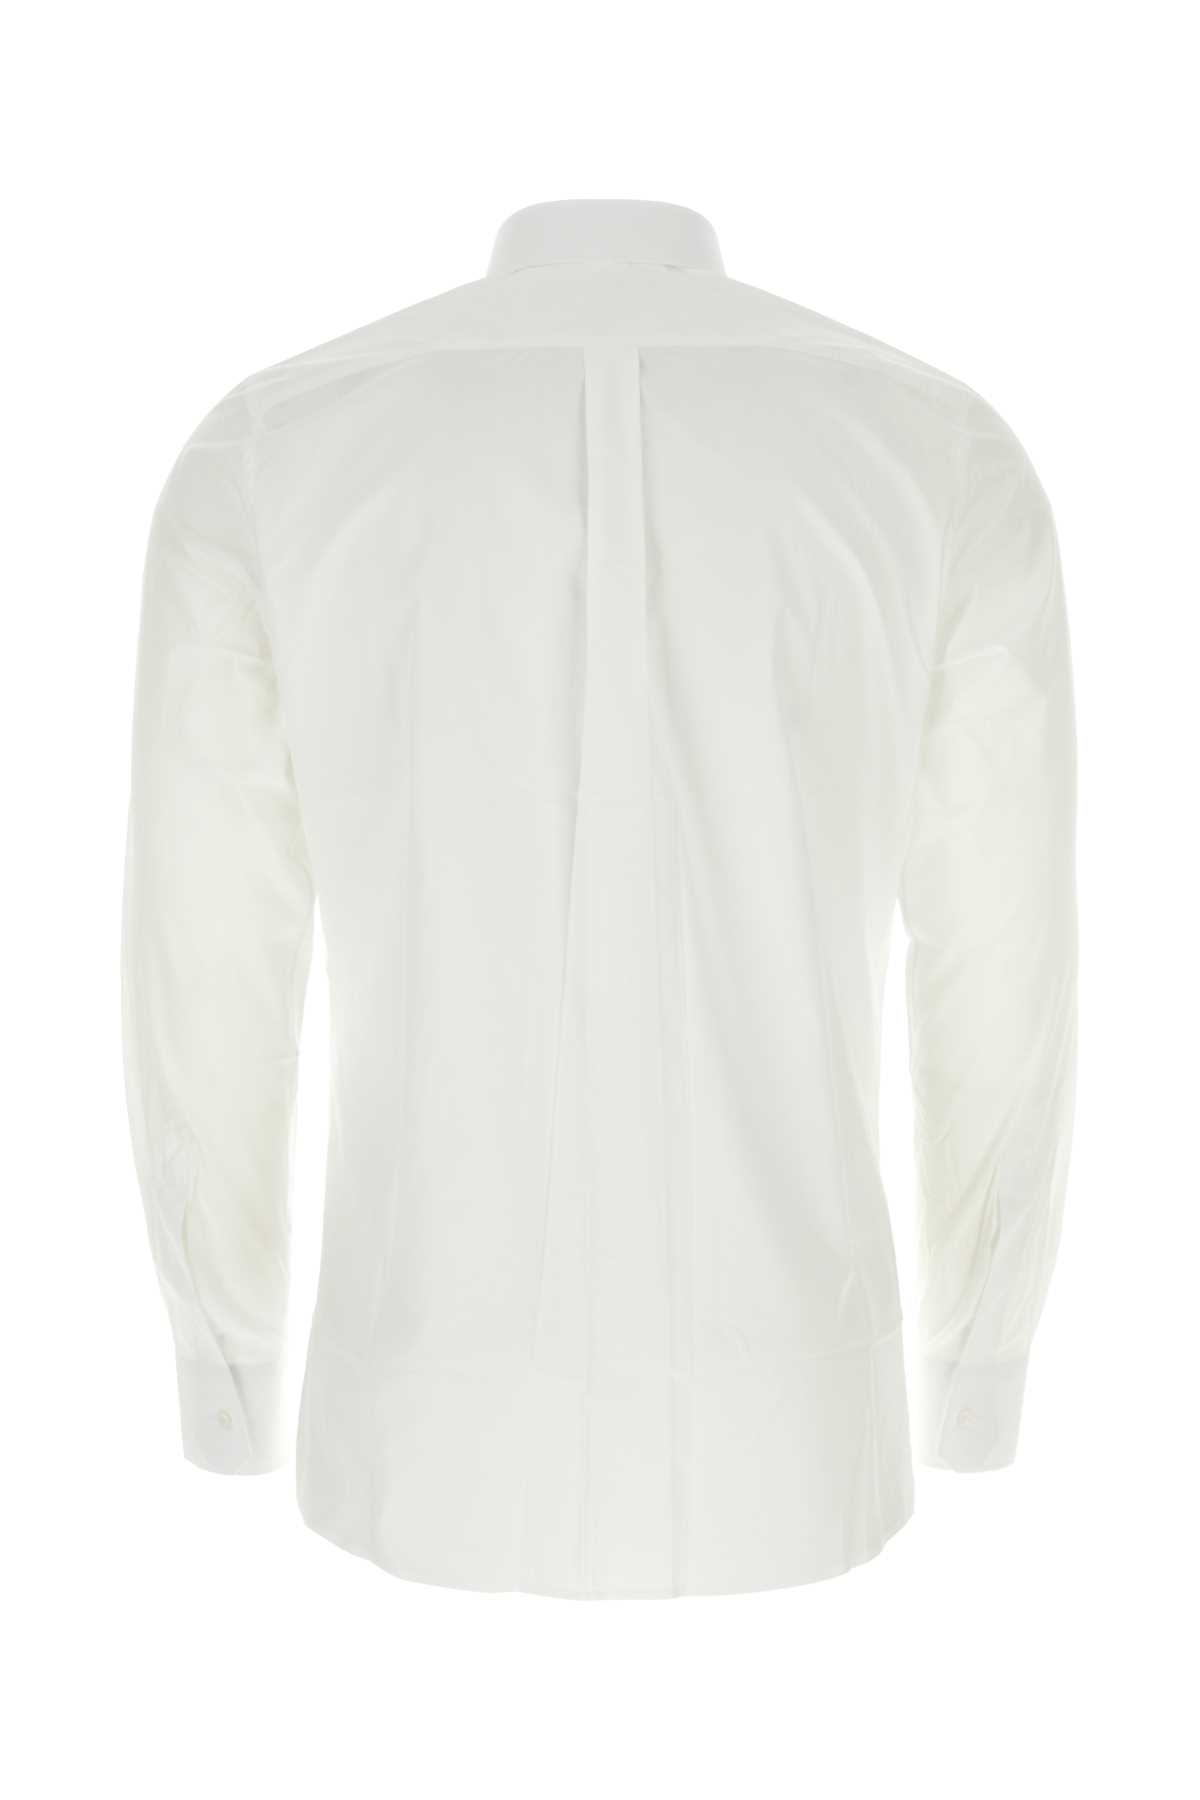 Dolce & Gabbana White Poplin Shirt In W0800